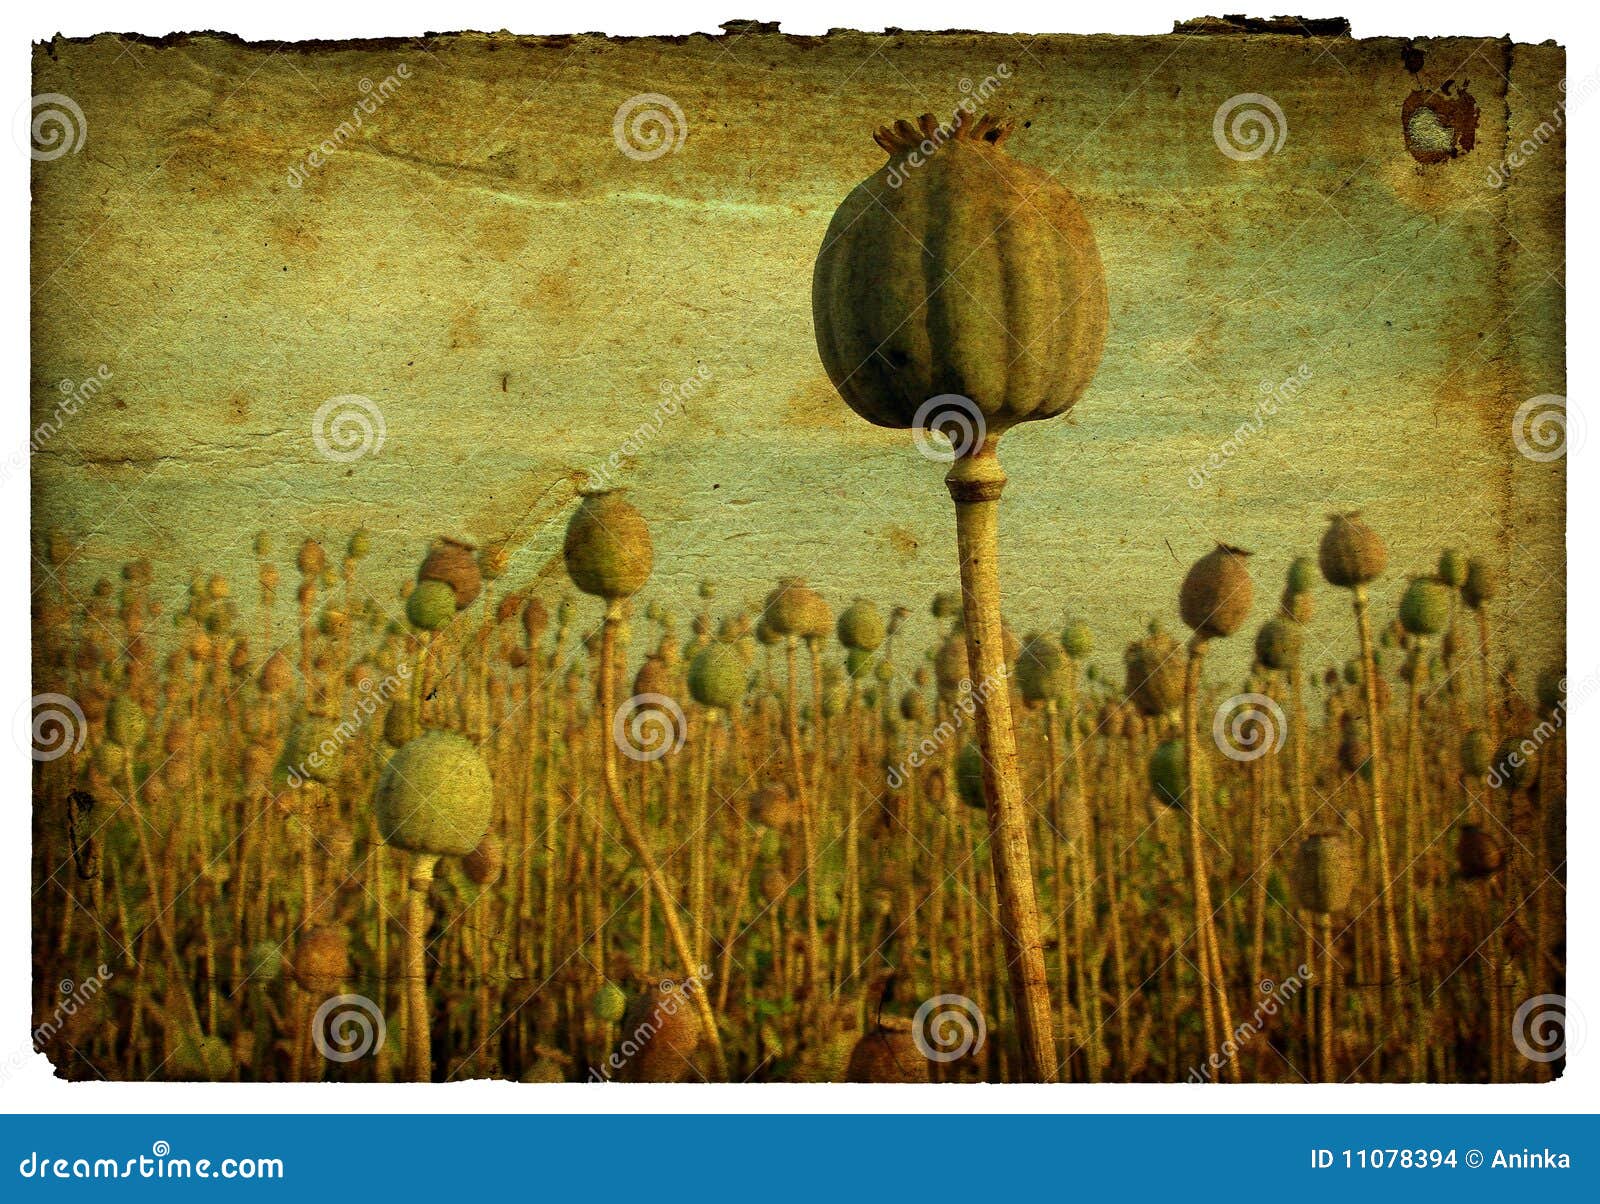 retro background - poppy field 1